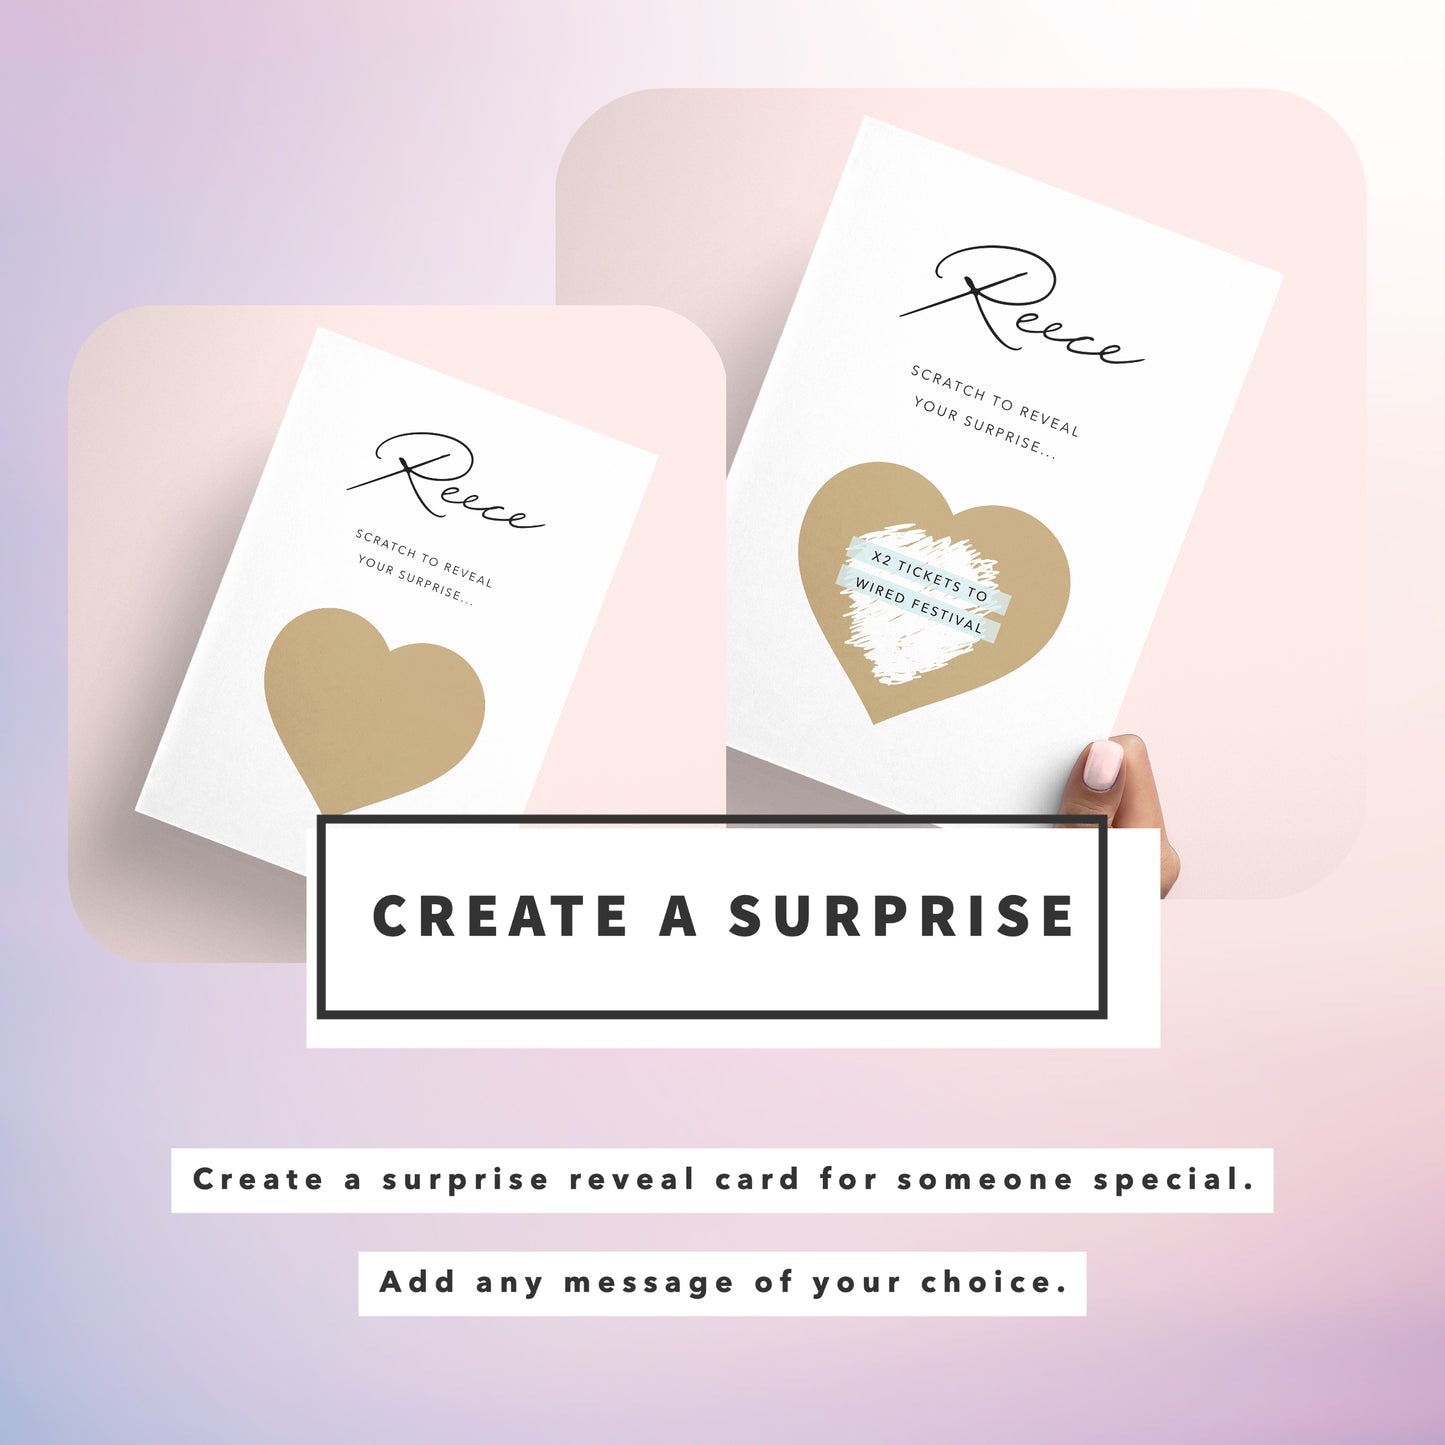 Surprise scratchcard - create a surprise